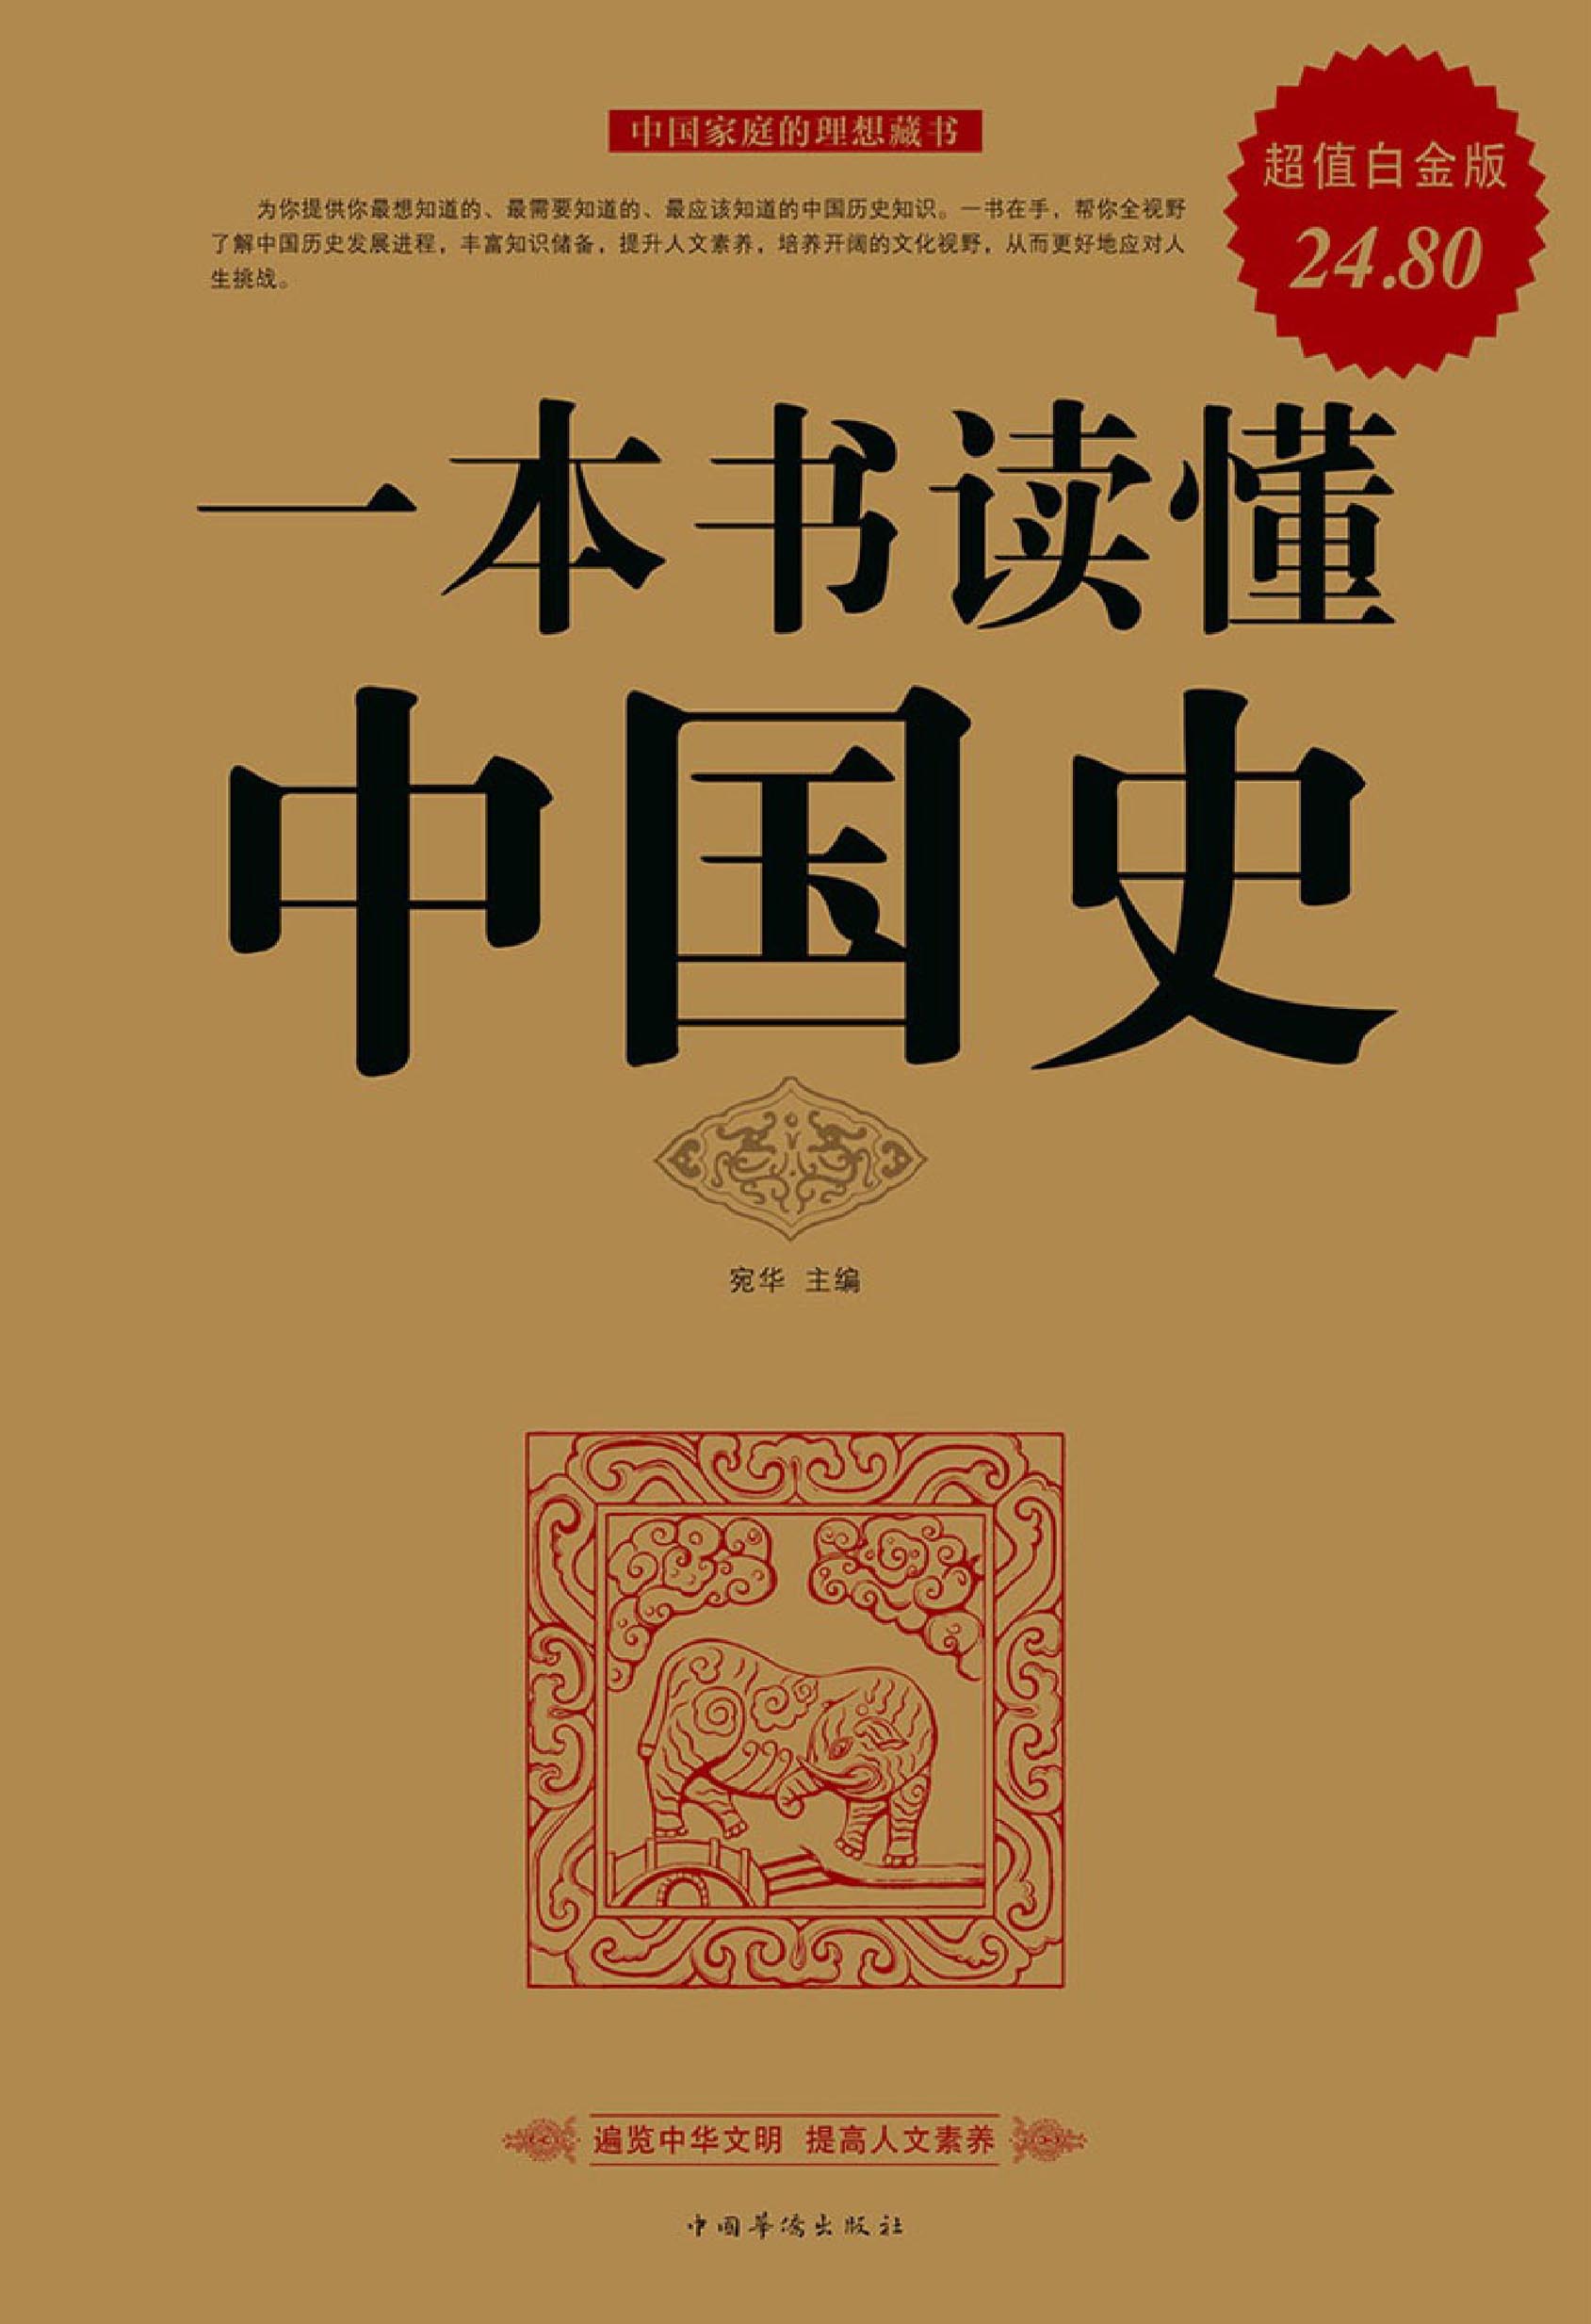 一本书读懂中国史